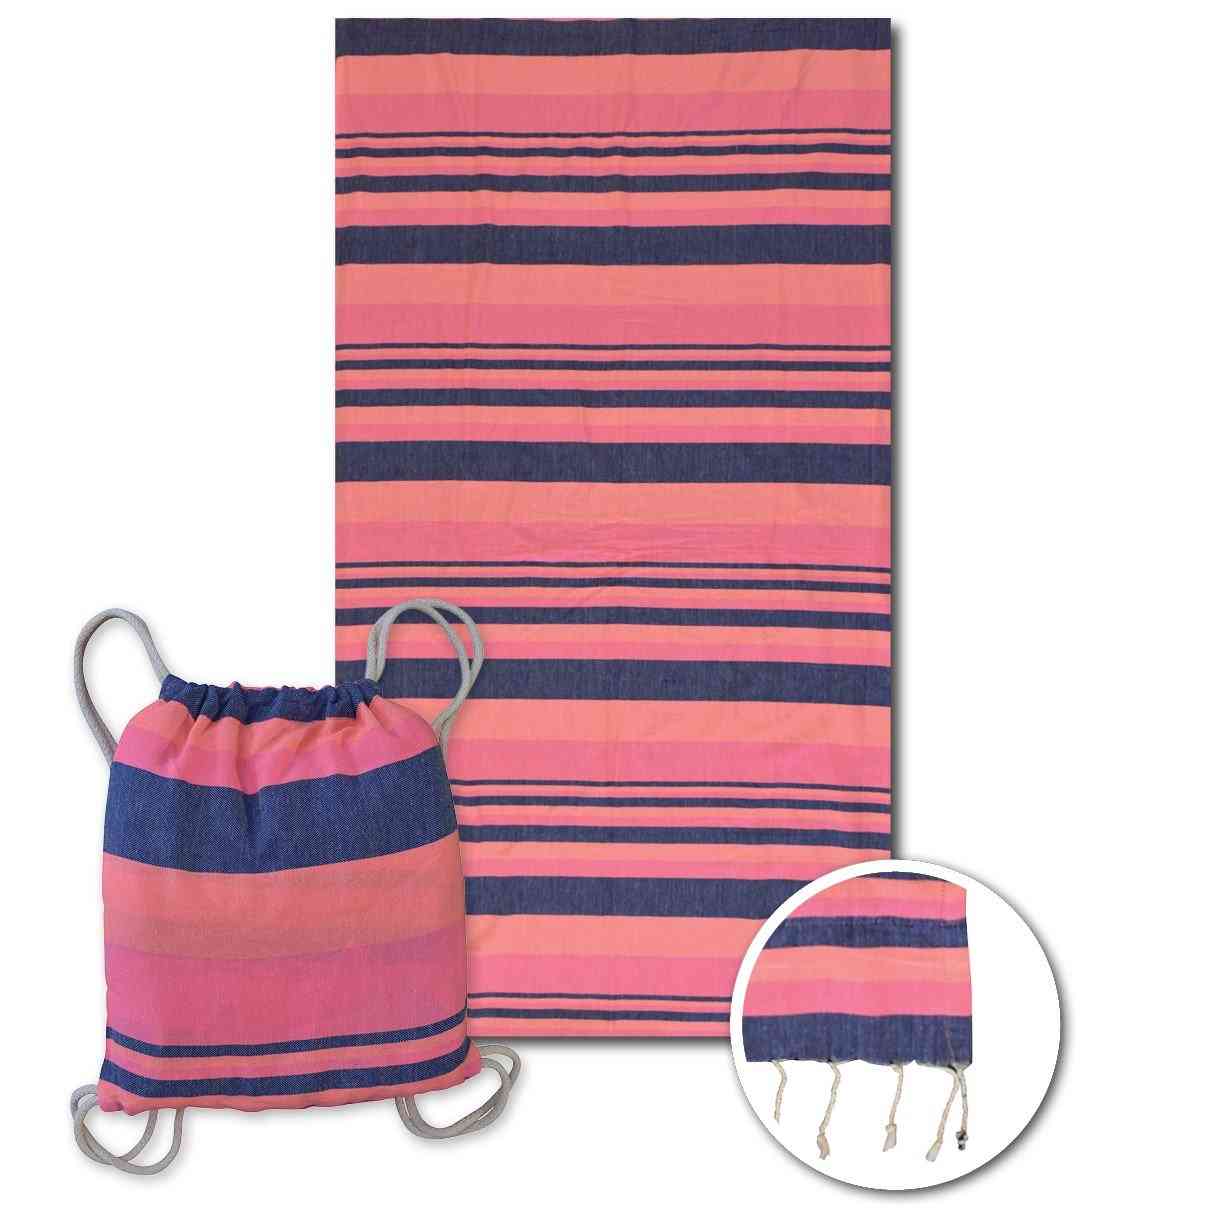 Fluorescente Sunset Beach Towel